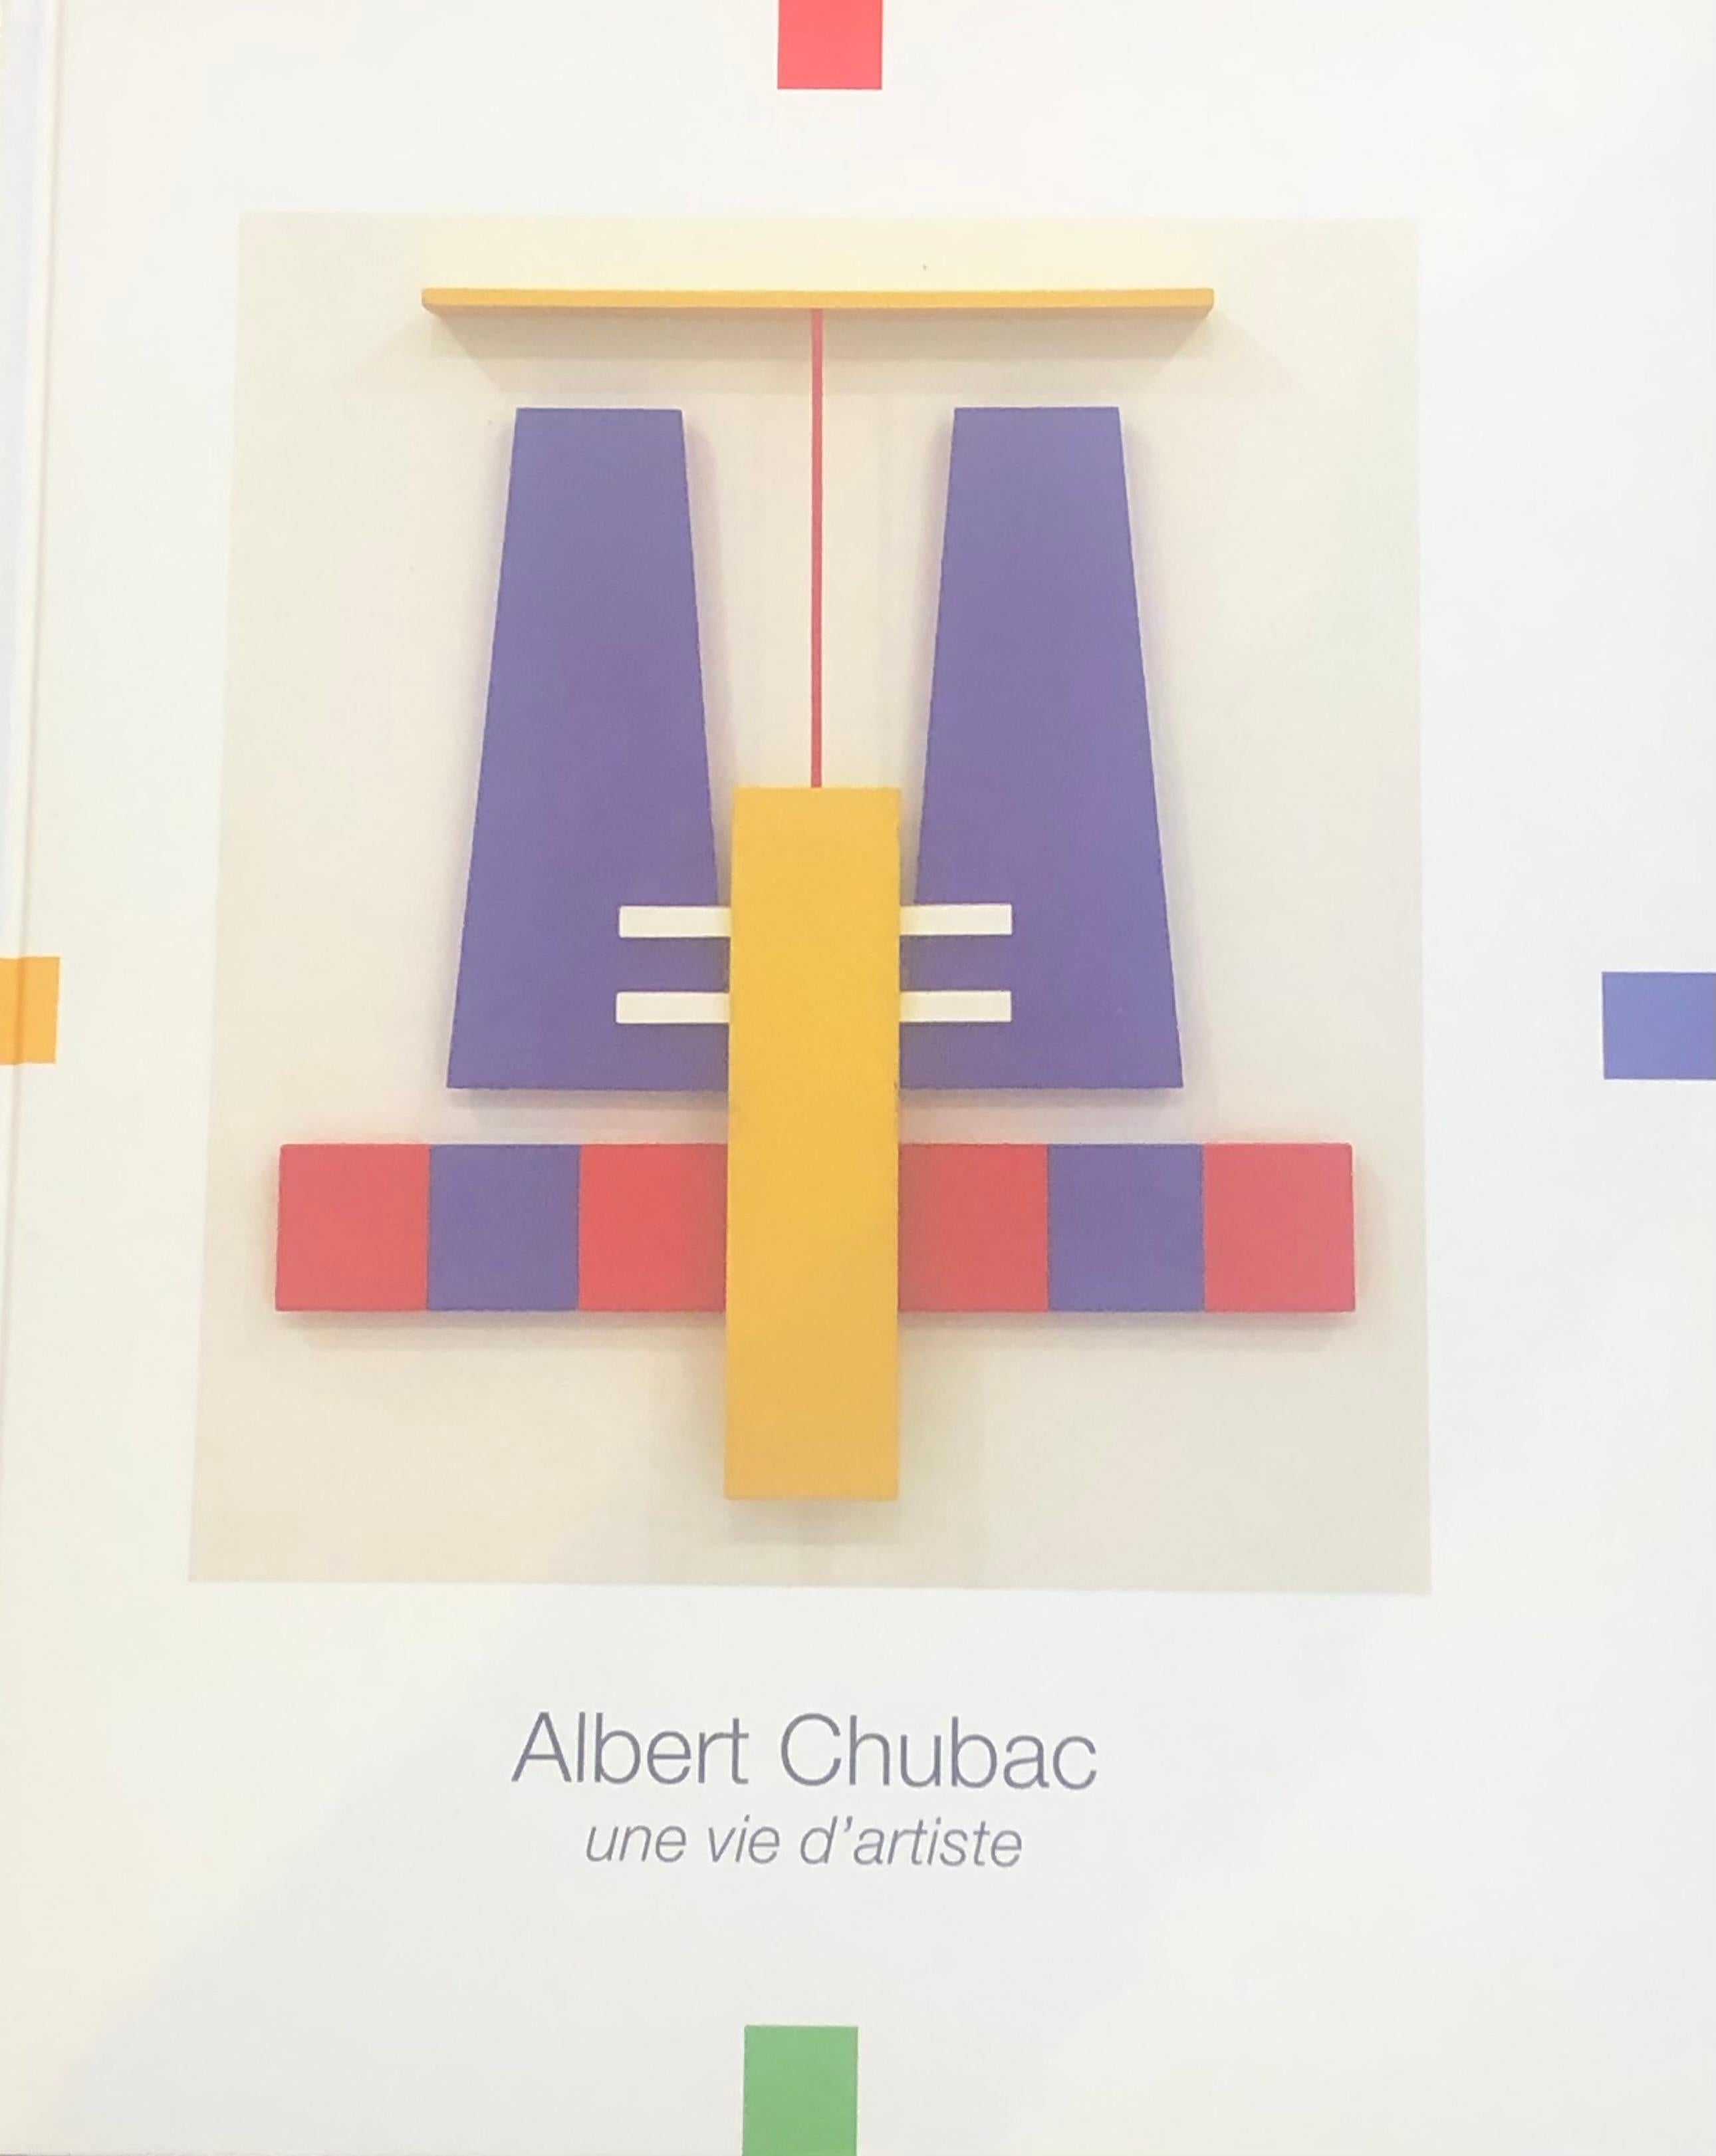 Albert Chubac, Sculpture, 